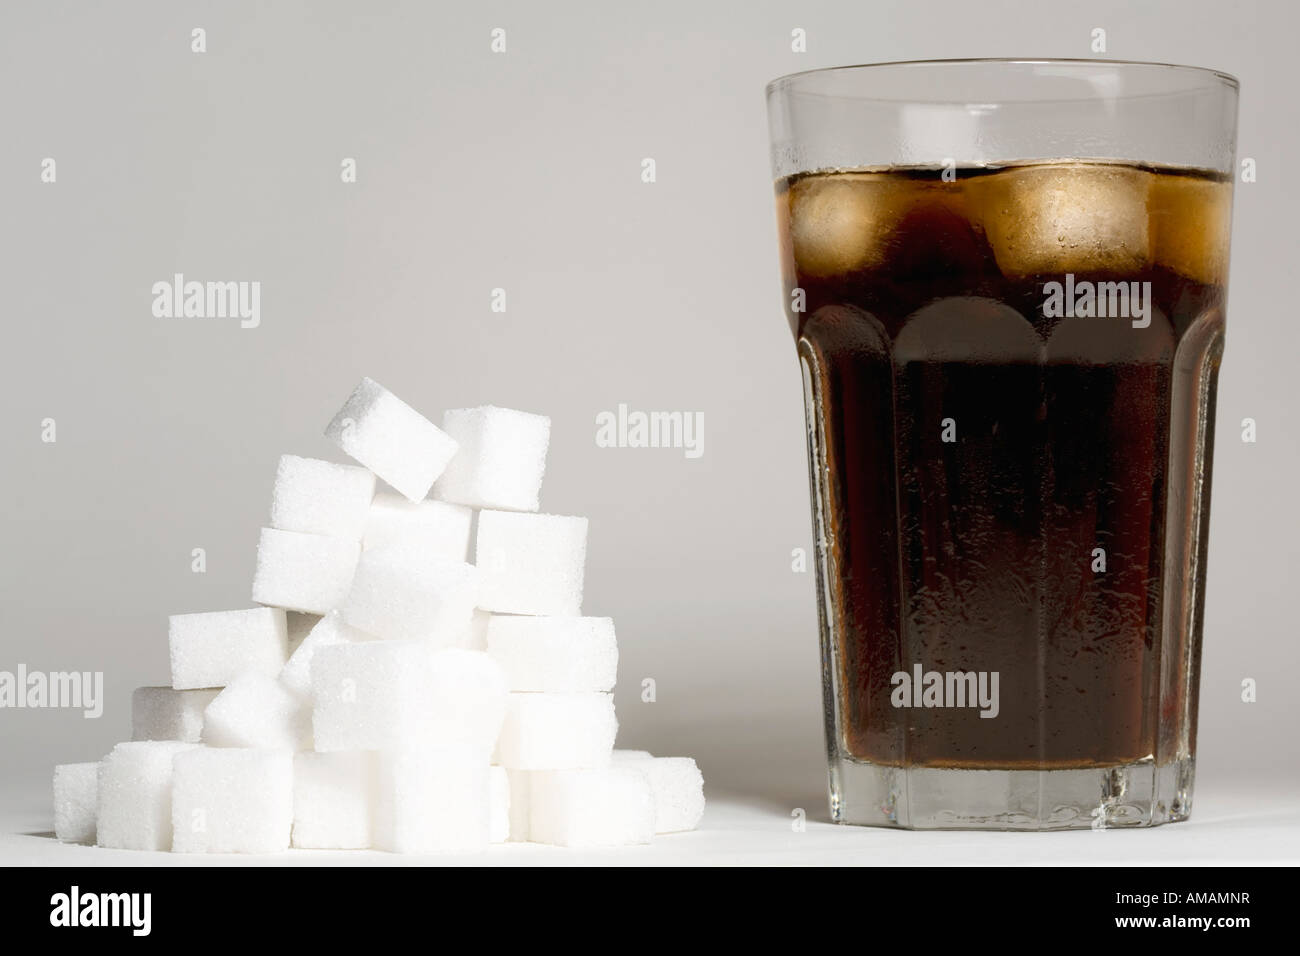 Ein Glas Cola und einen Haufen Zuckerwürfel Stockfotografie - Alamy